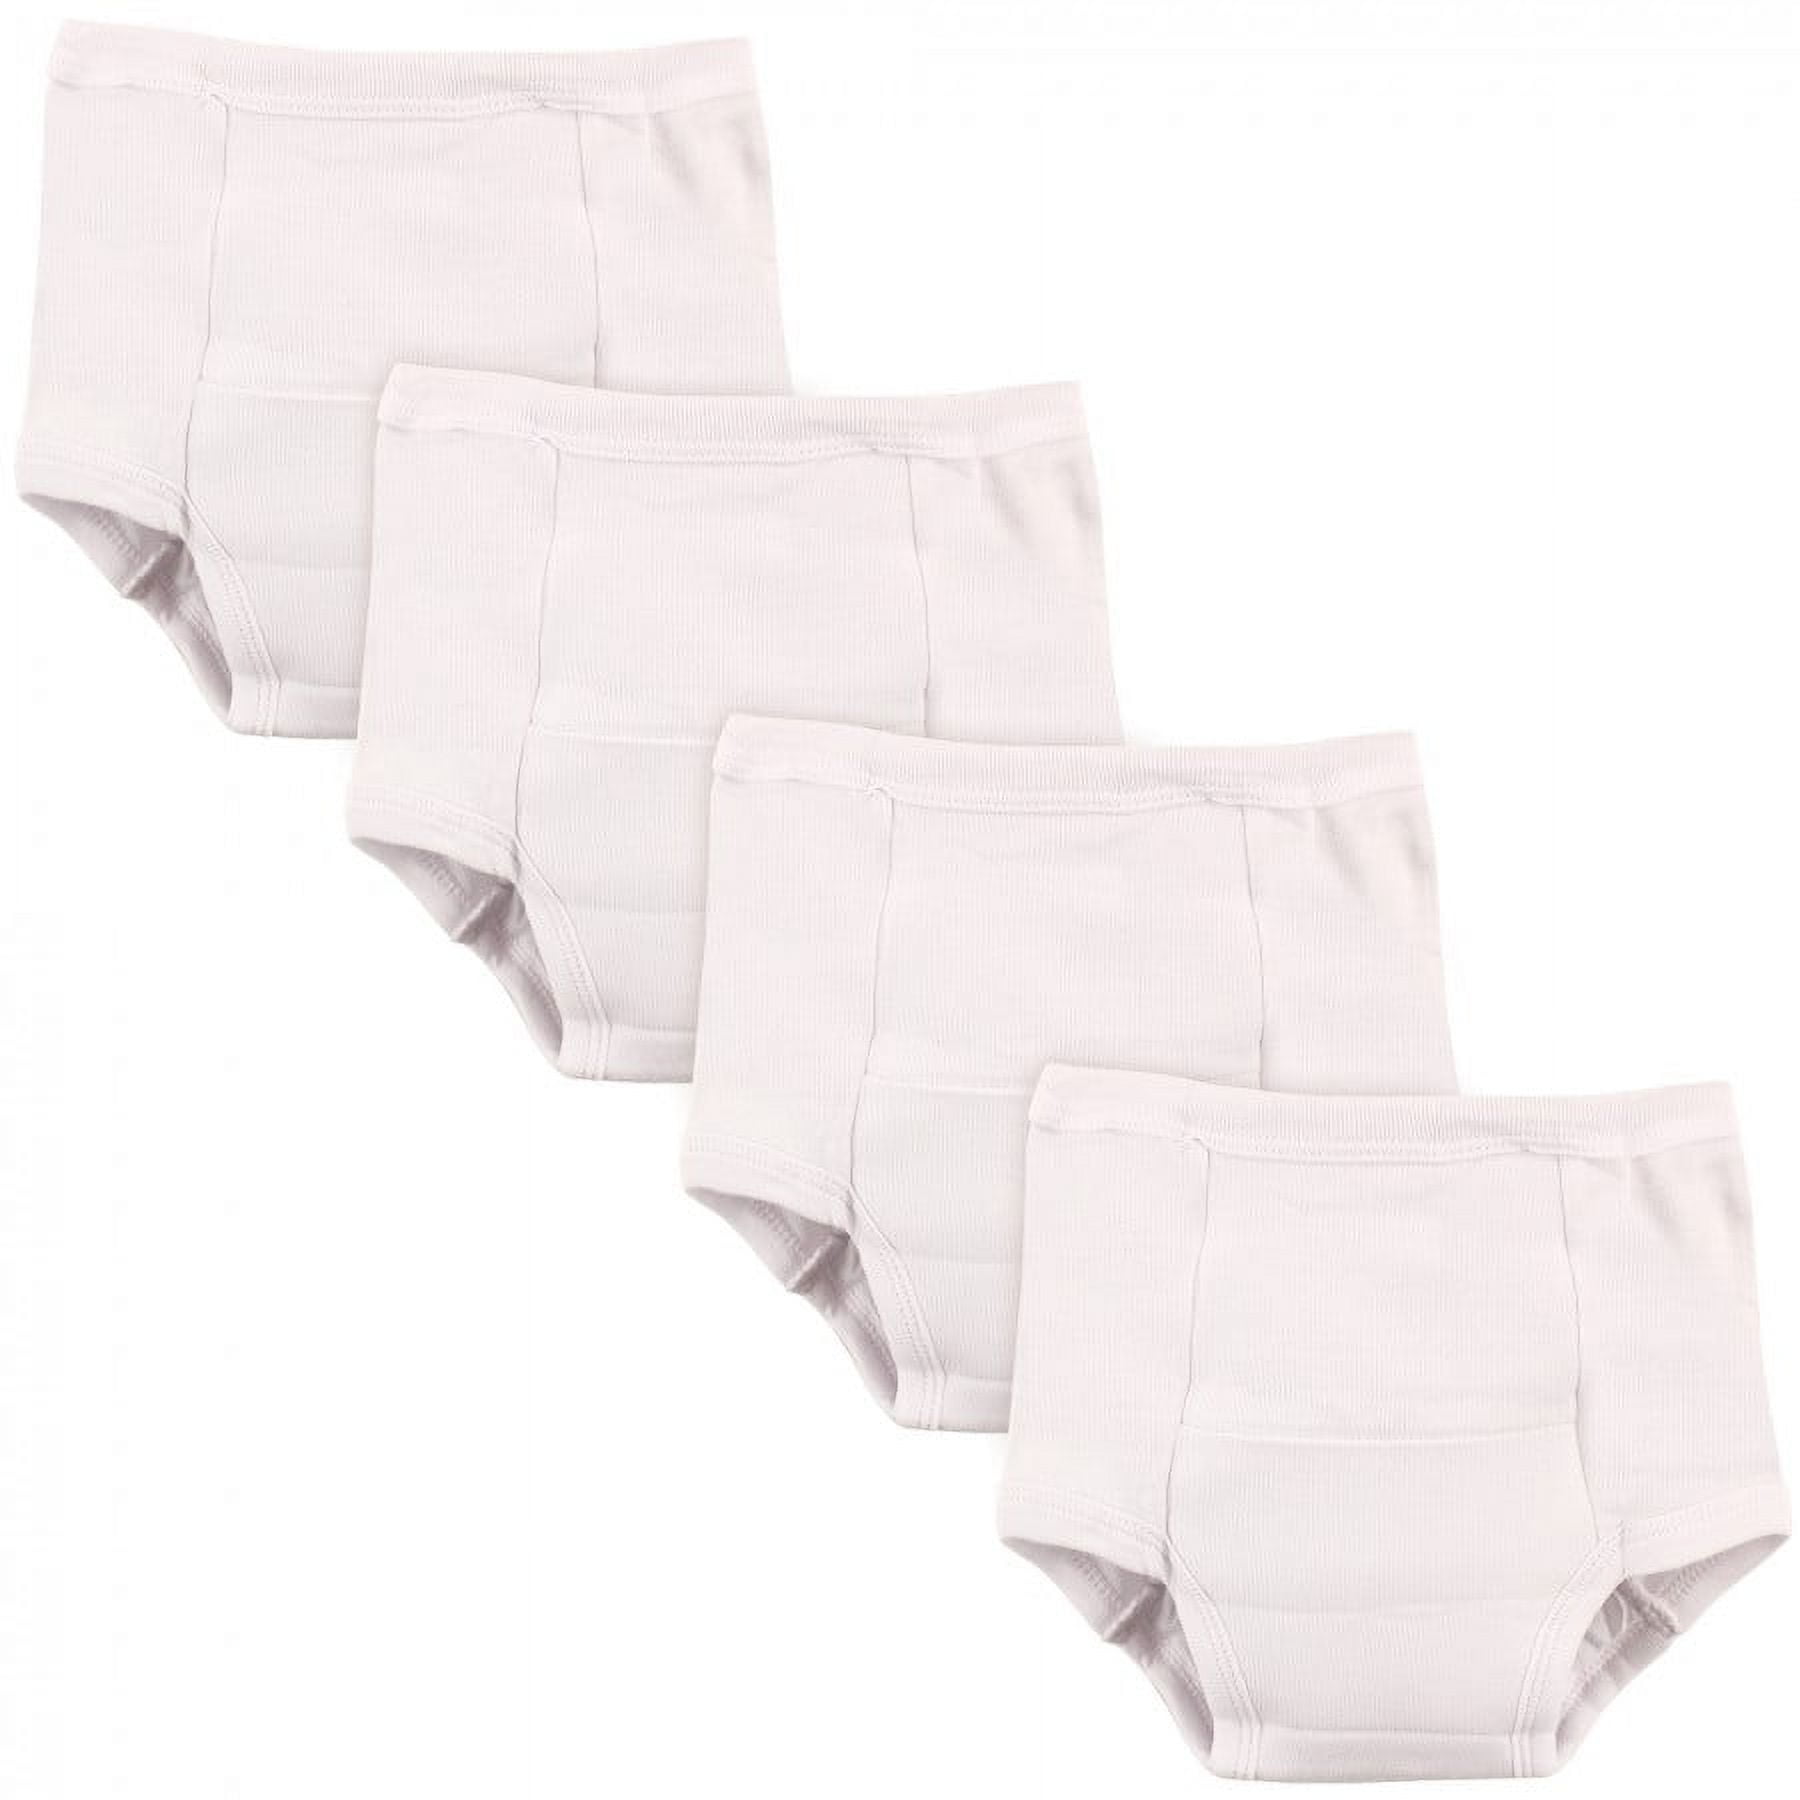 Luvable Friends Unisex Baby Cotton Training Pants